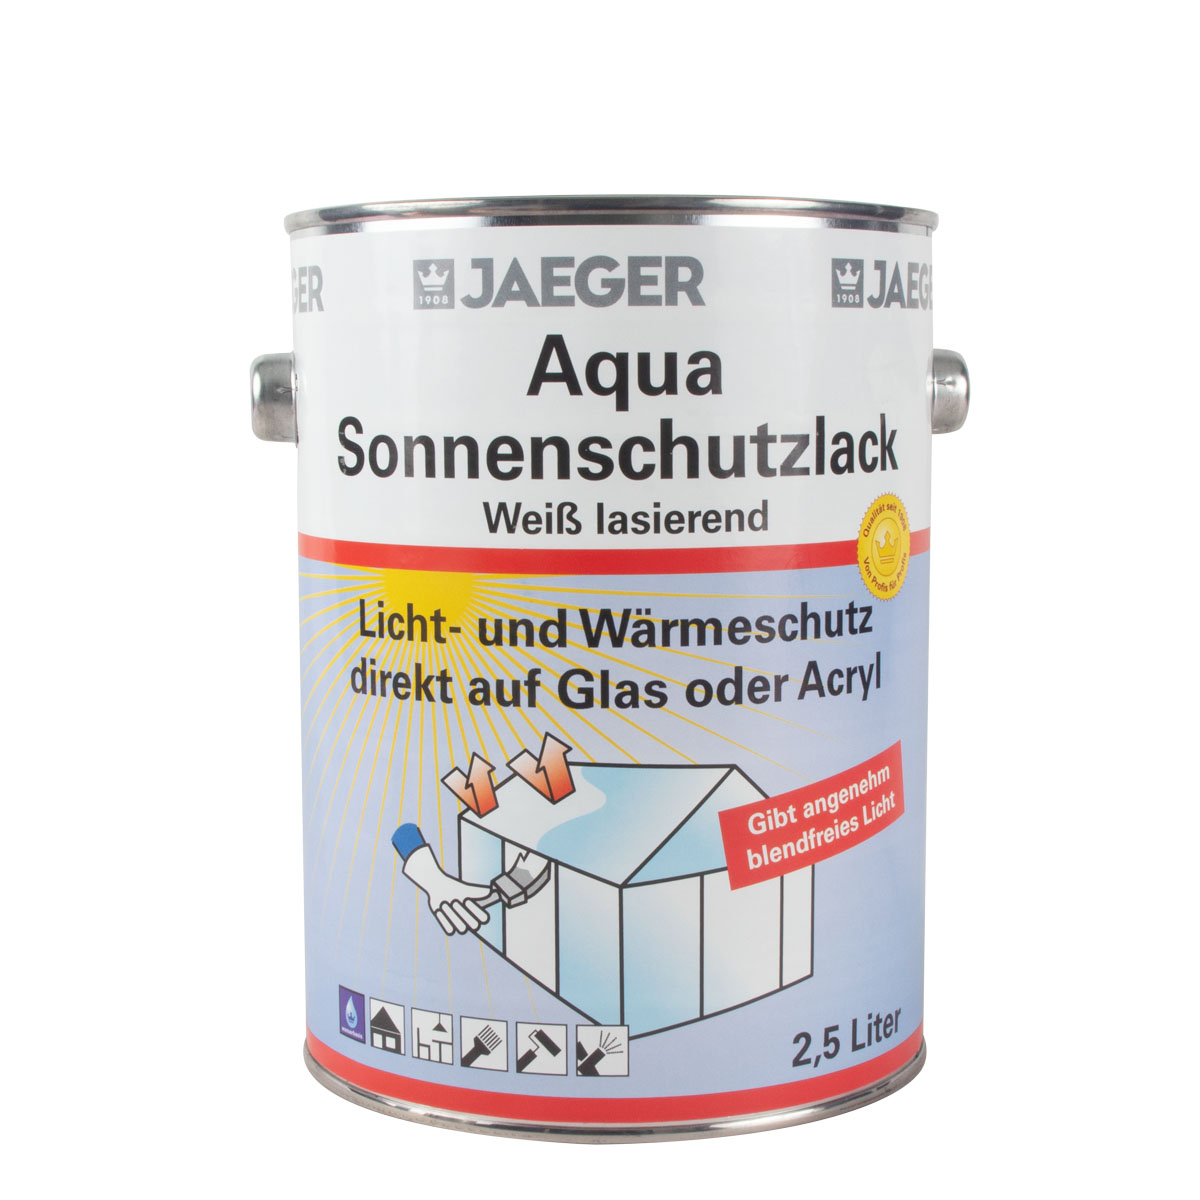 Jaeger Aqua Sonnenschutzlack305 2,5l, weiß, lasierend